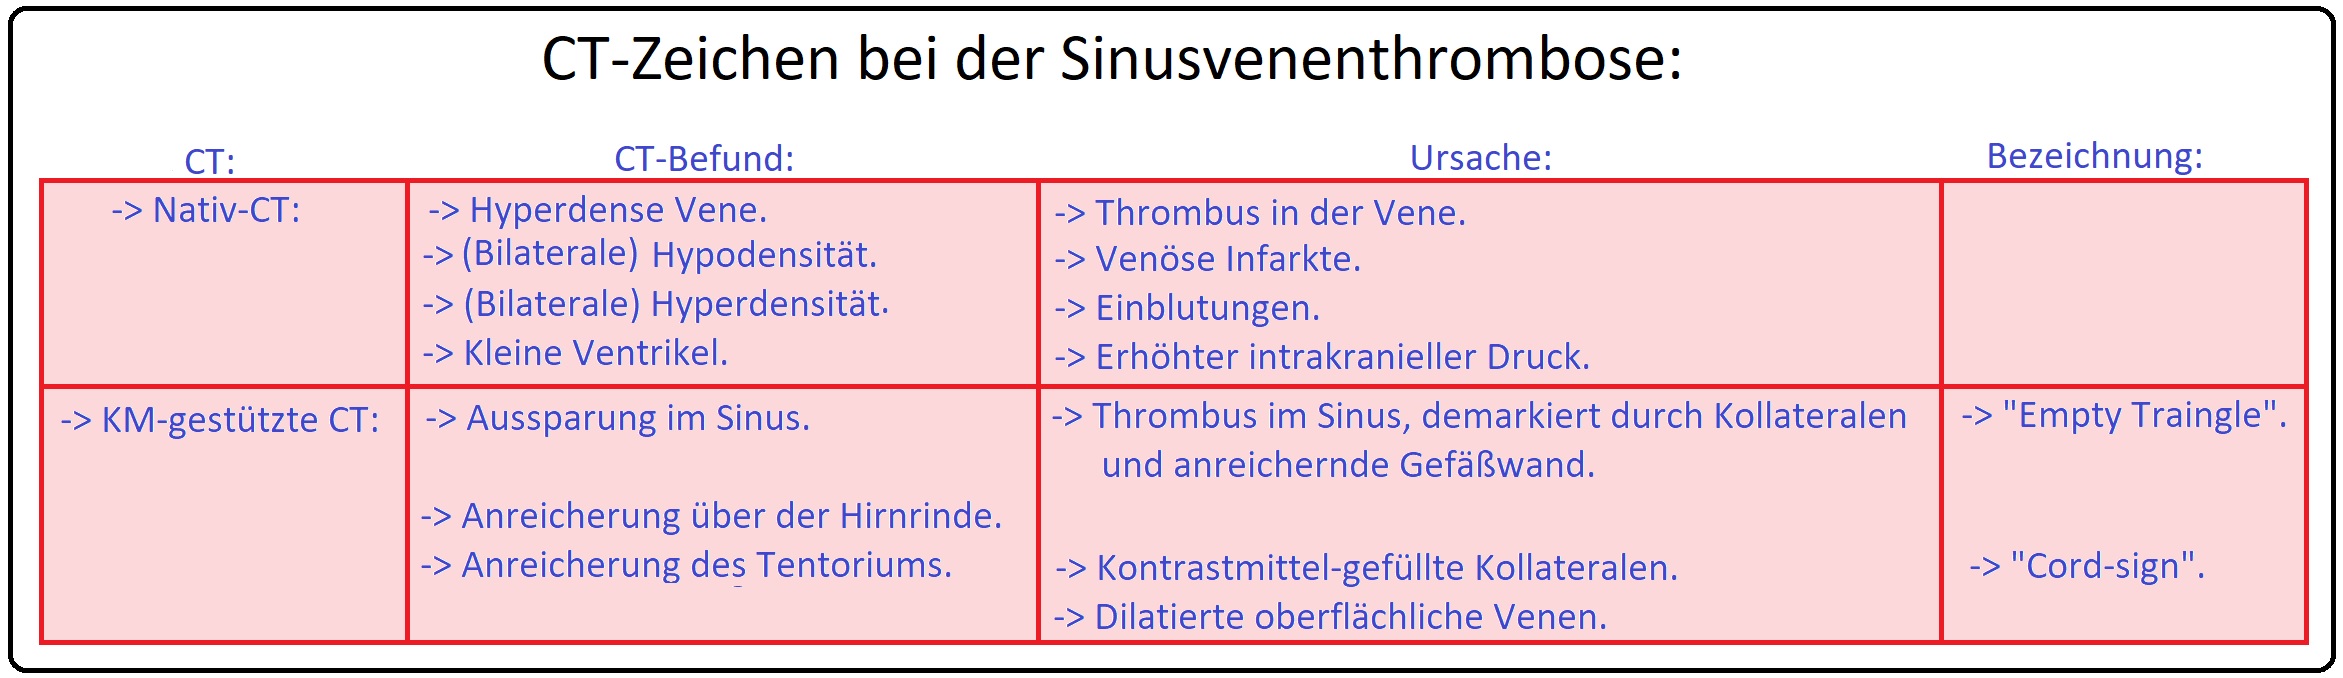 045 CT Zeichen bei der Sinusvenenthrombose